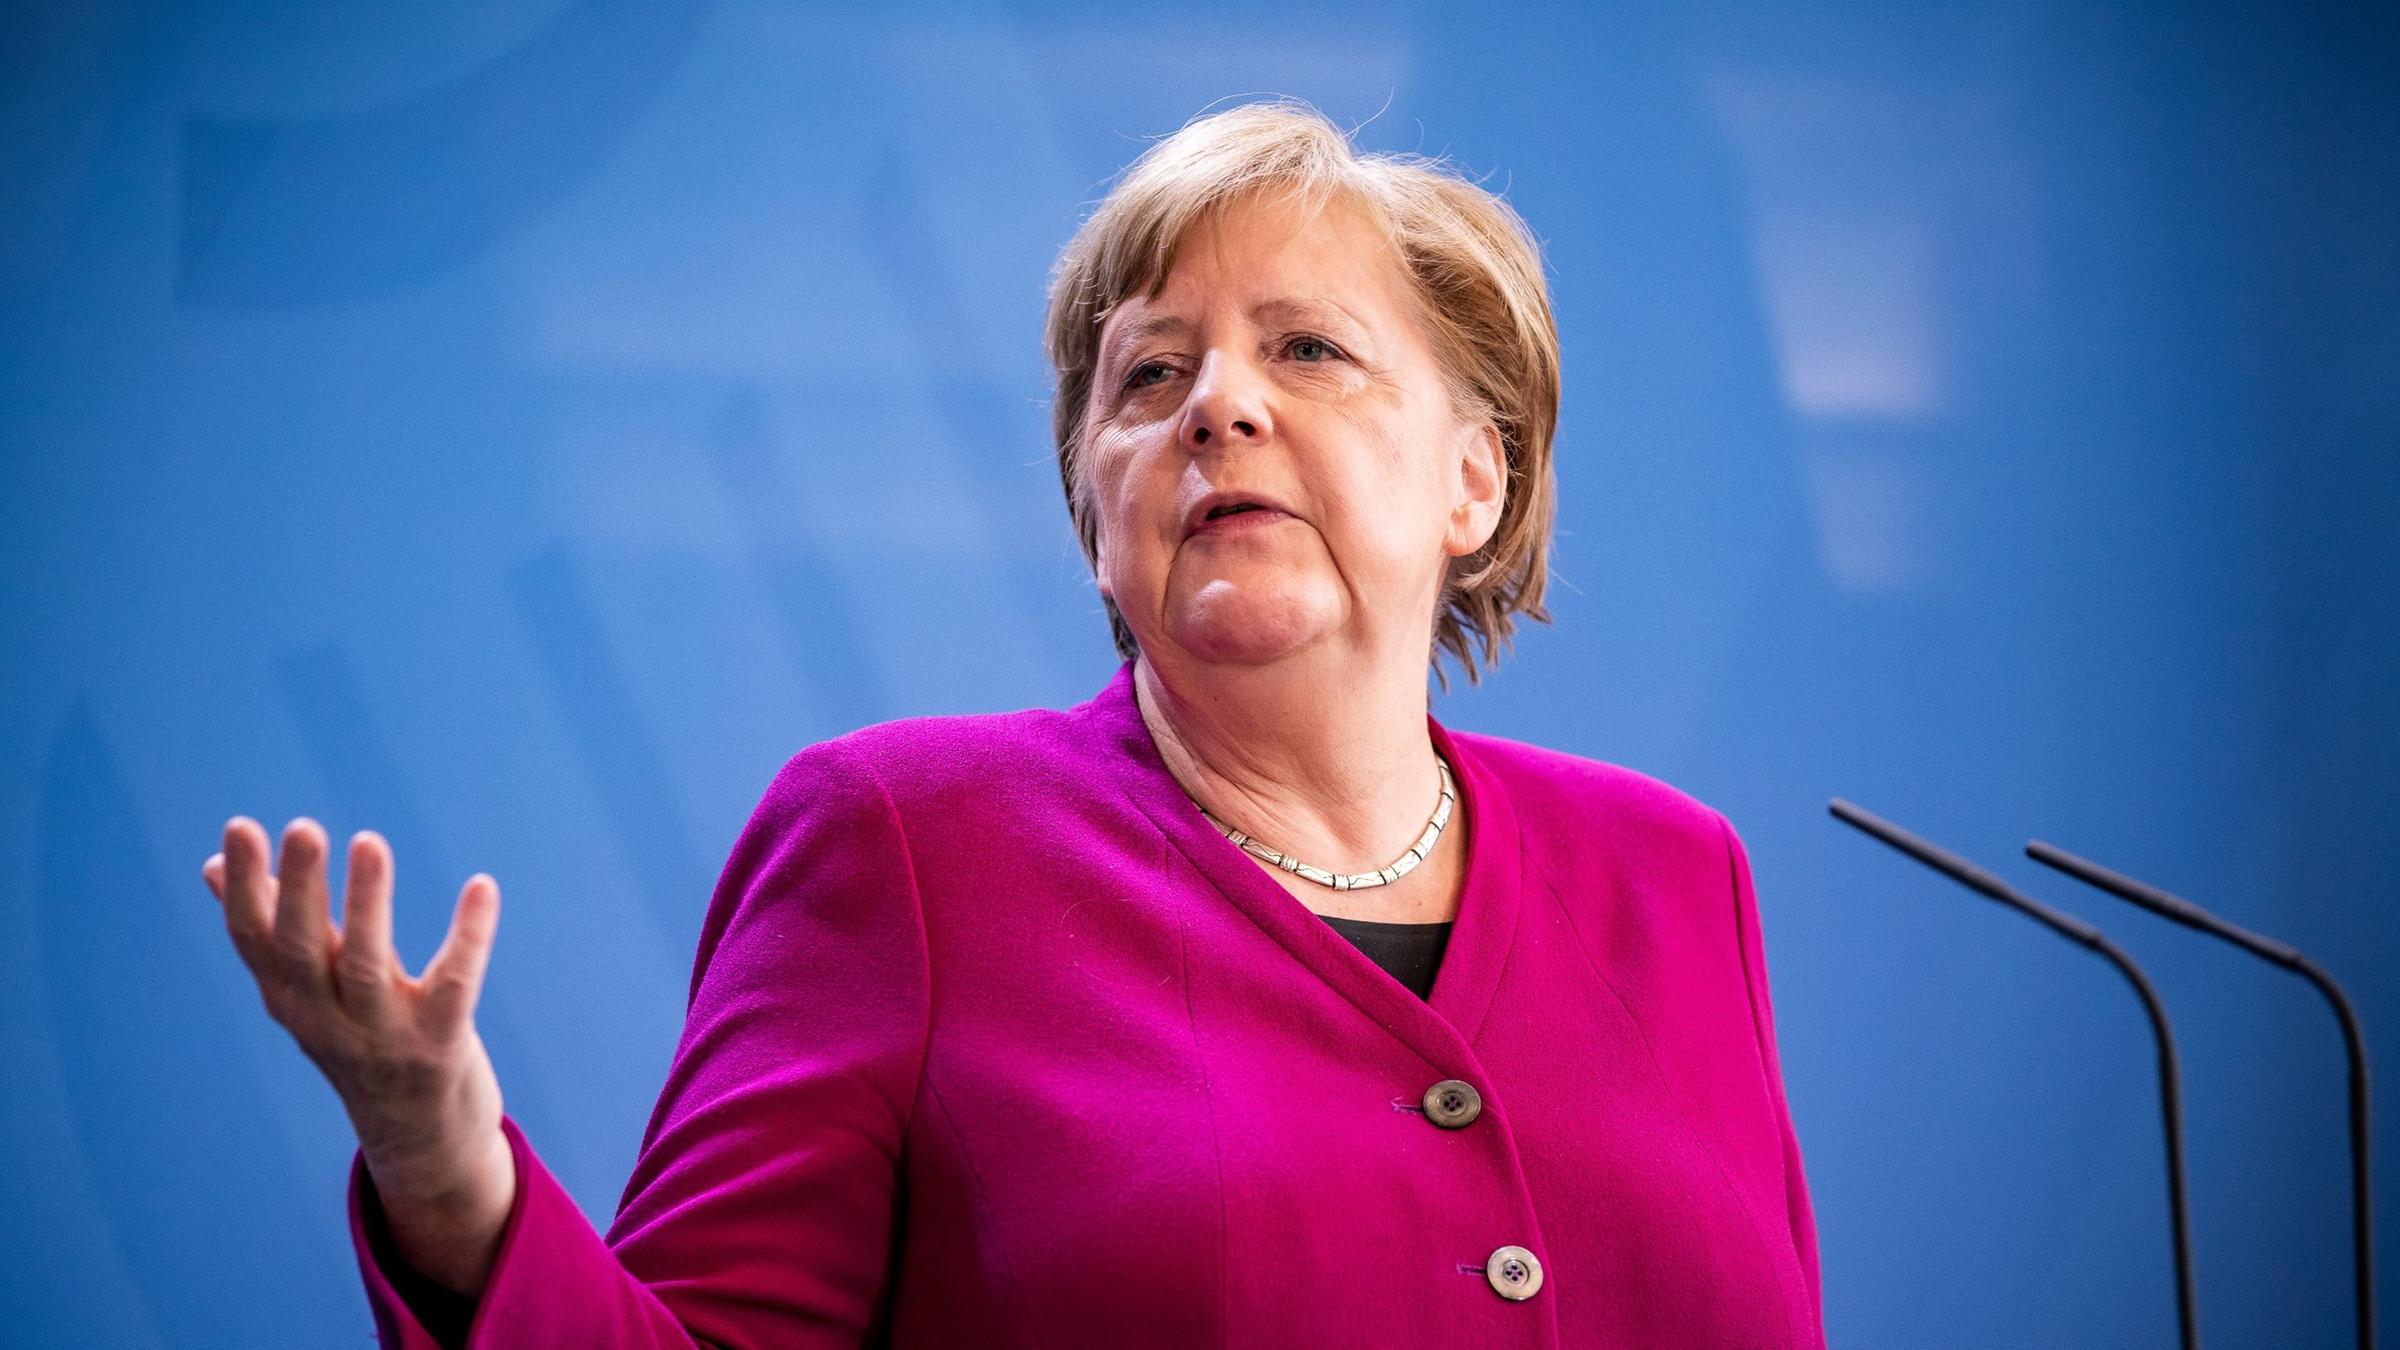 Panică la Berlin: Sediul cancelarului Angela Merkel a fost atacat